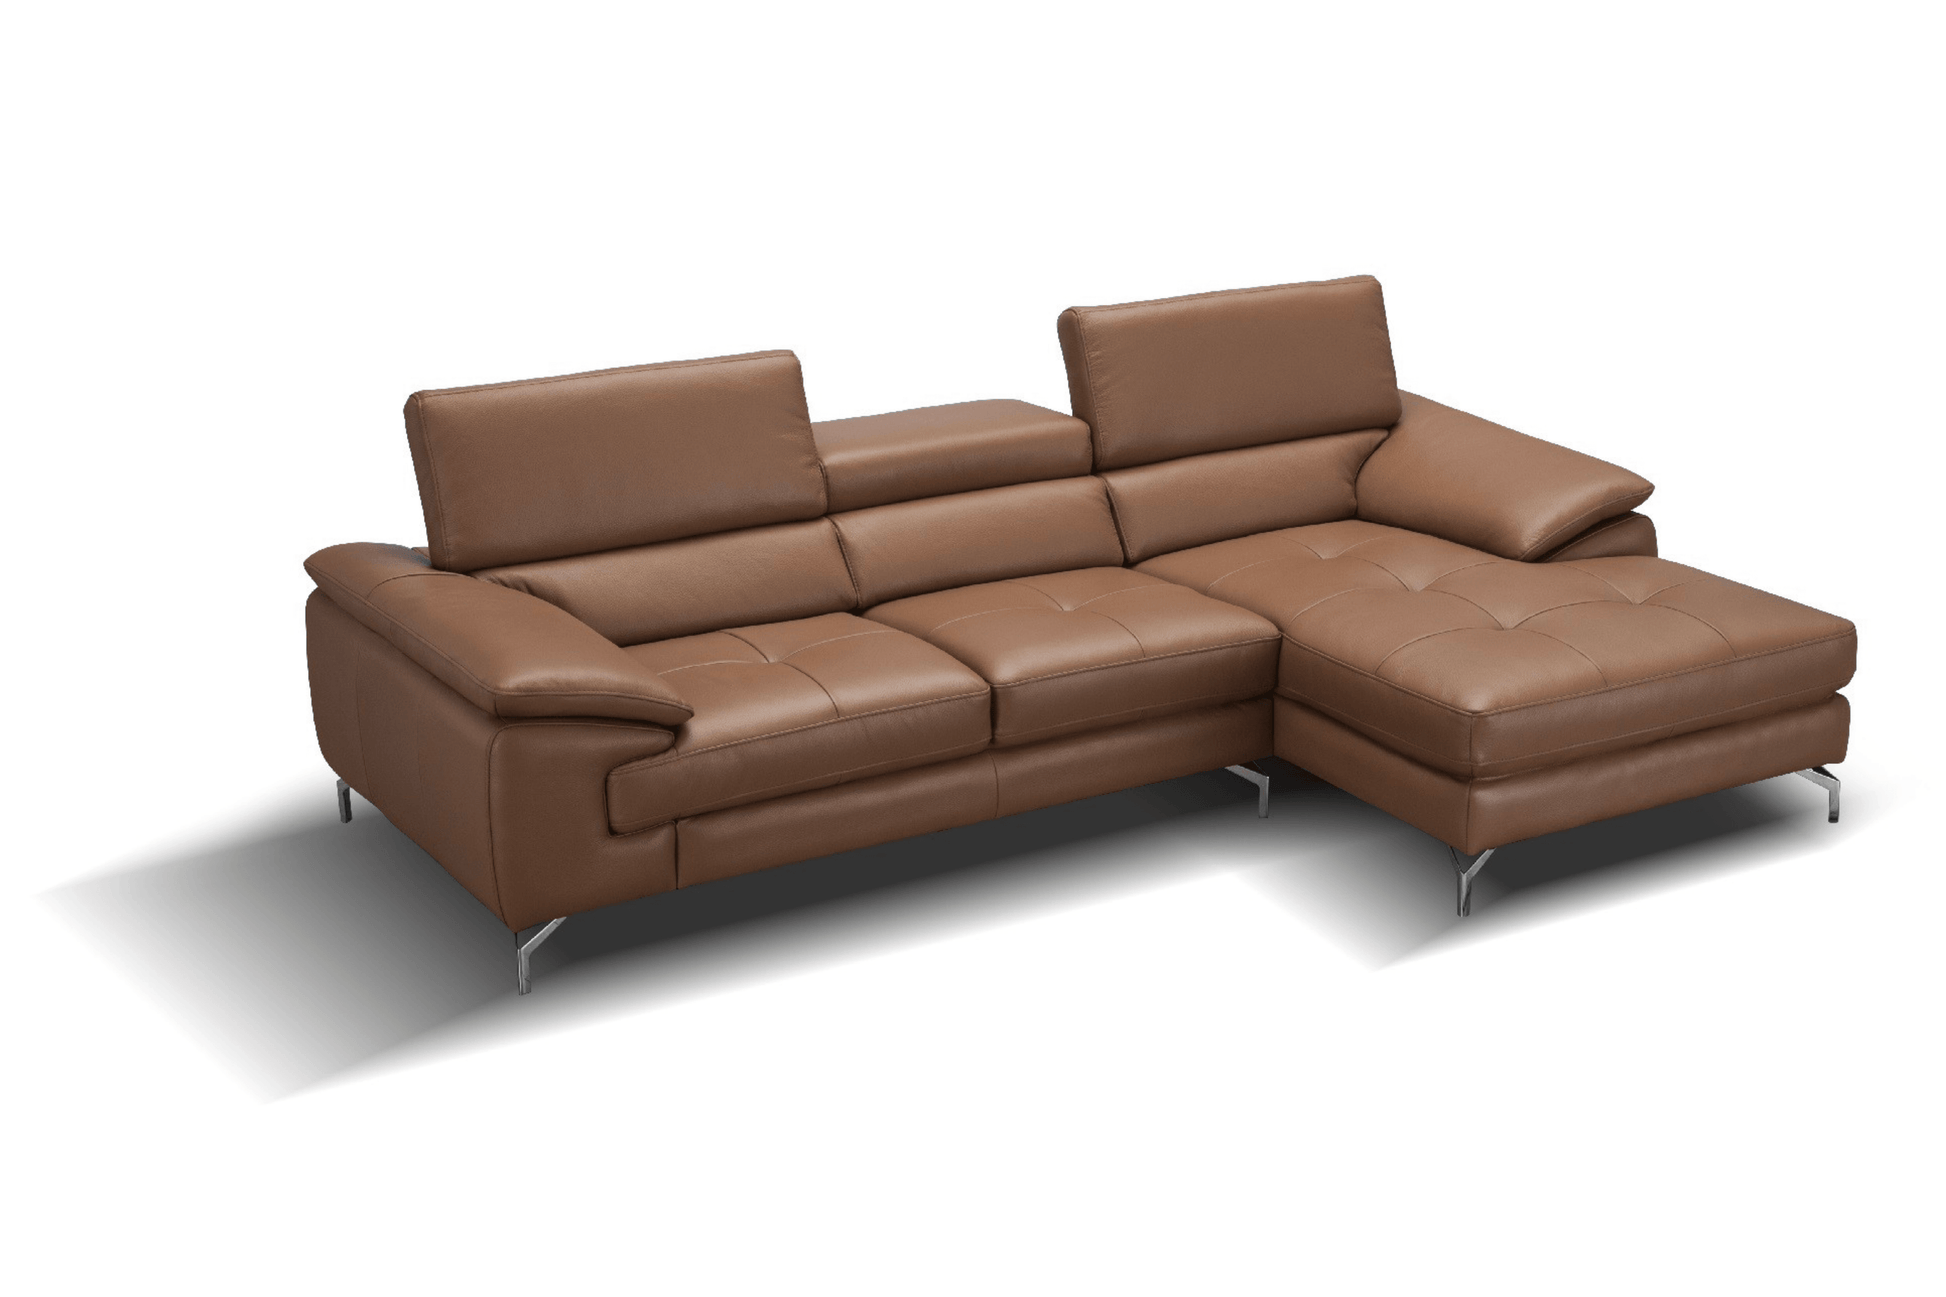 A973b Premium Leather Sectional in Caramel - Venini Furniture 